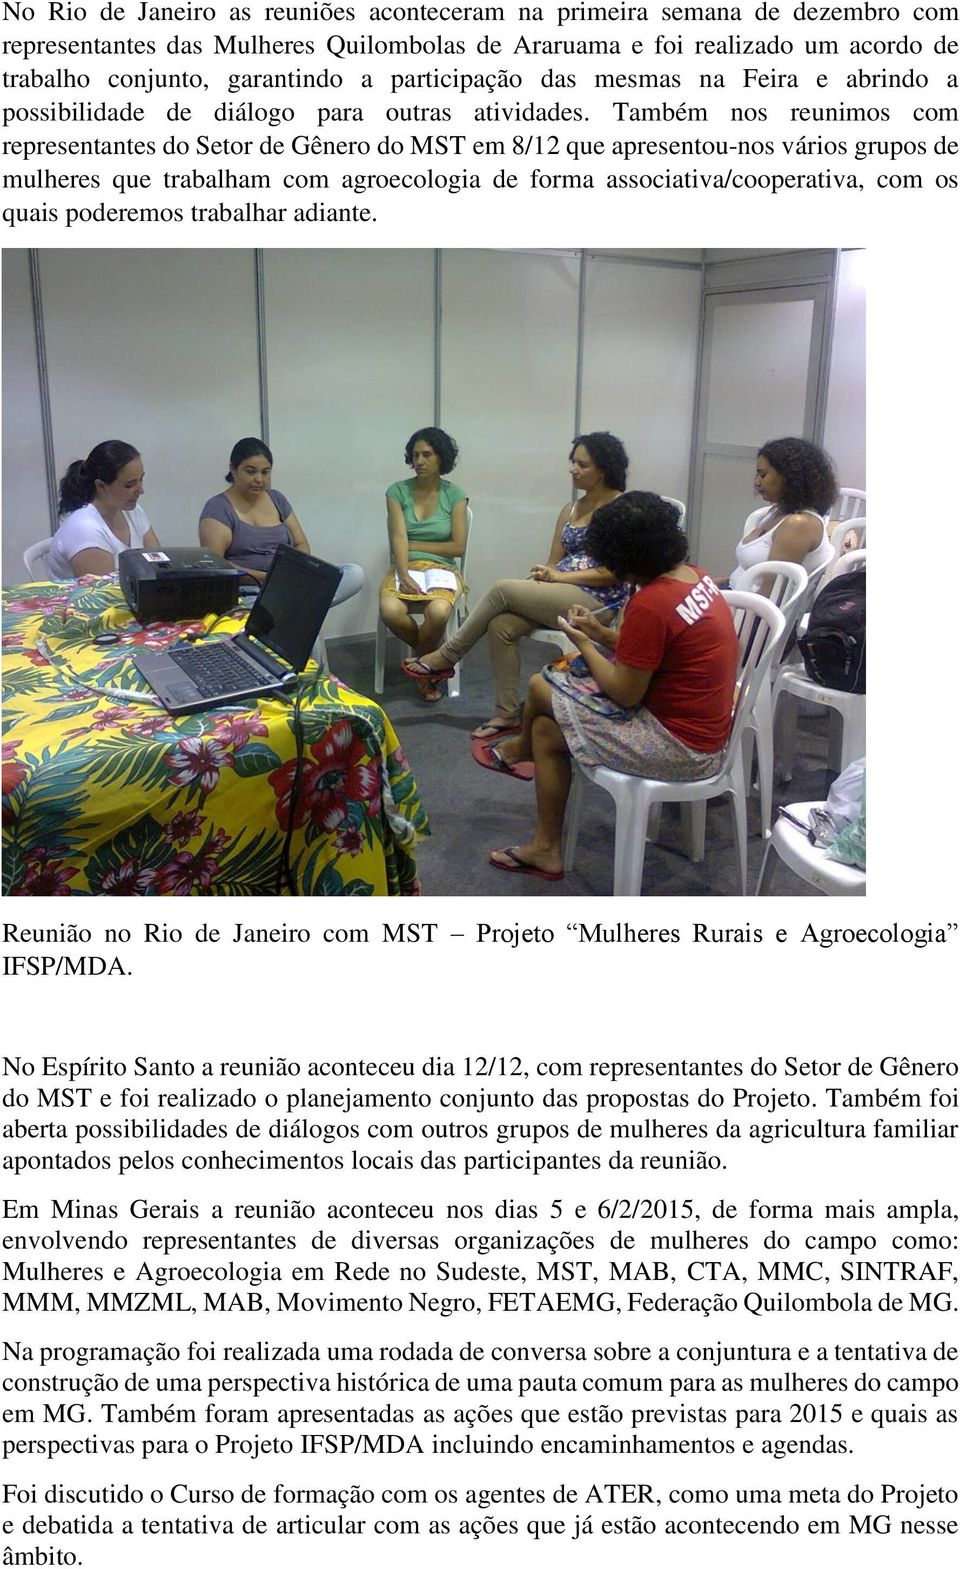 Também nos reunimos com representantes do Setor de Gênero do MST em 8/12 que apresentou-nos vários grupos de mulheres que trabalham com agroecologia de forma associativa/cooperativa, com os quais